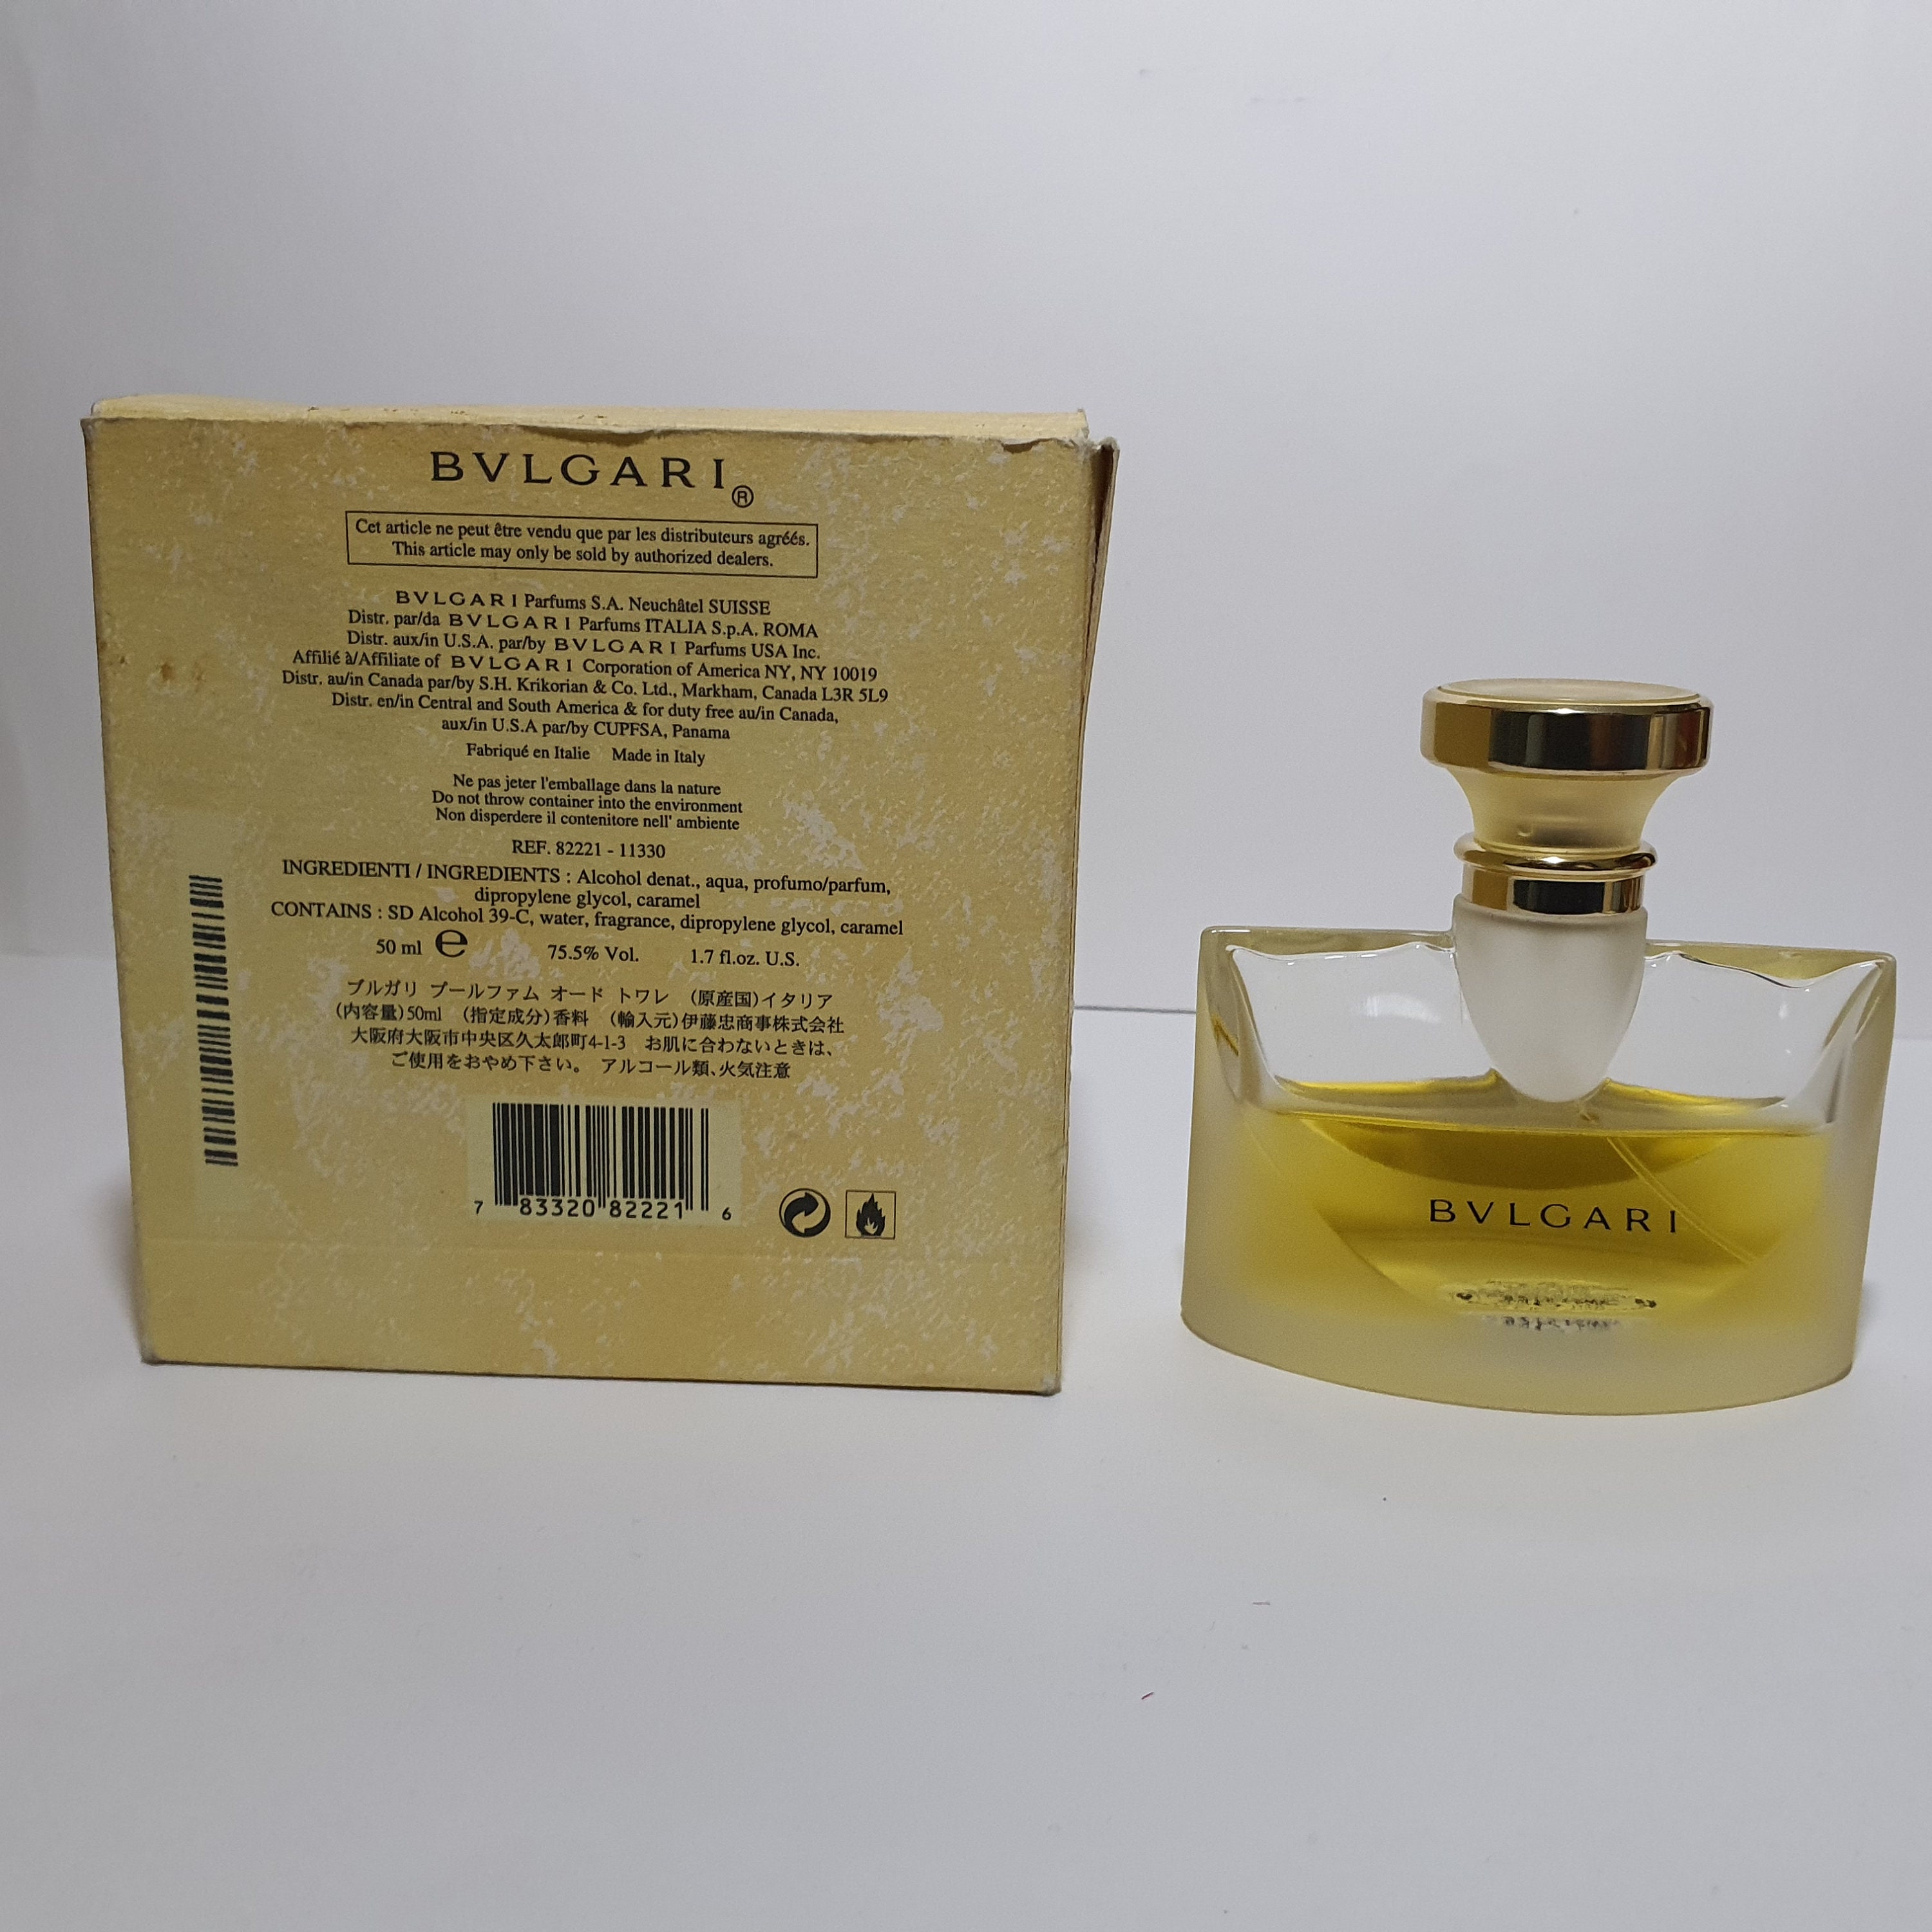 Chanel Bleu Men's Eau de Parfum Pour Homme 1.7 OZ / 50 ML In Retail  Box/Sealed